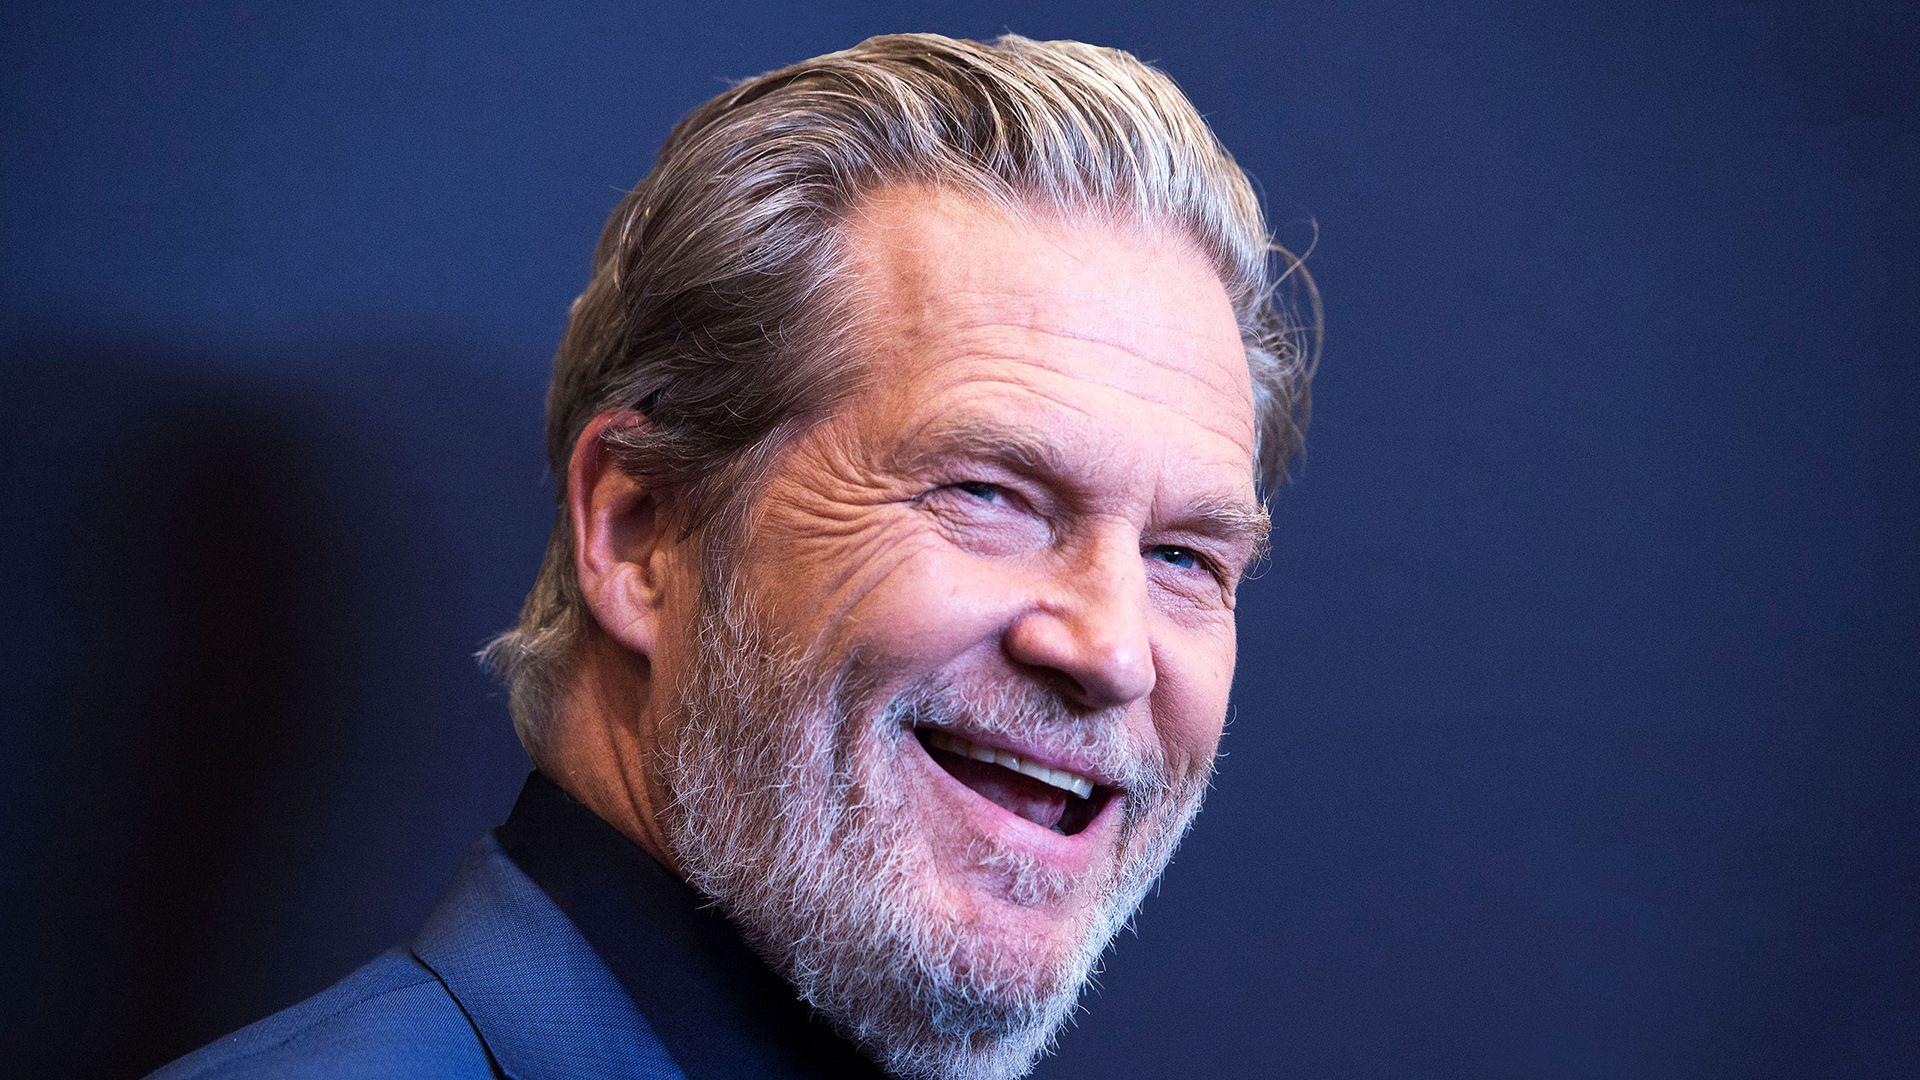 Jeff Bridges riceverà il premio Cecil B. DeMille ai Golden Globes 2019